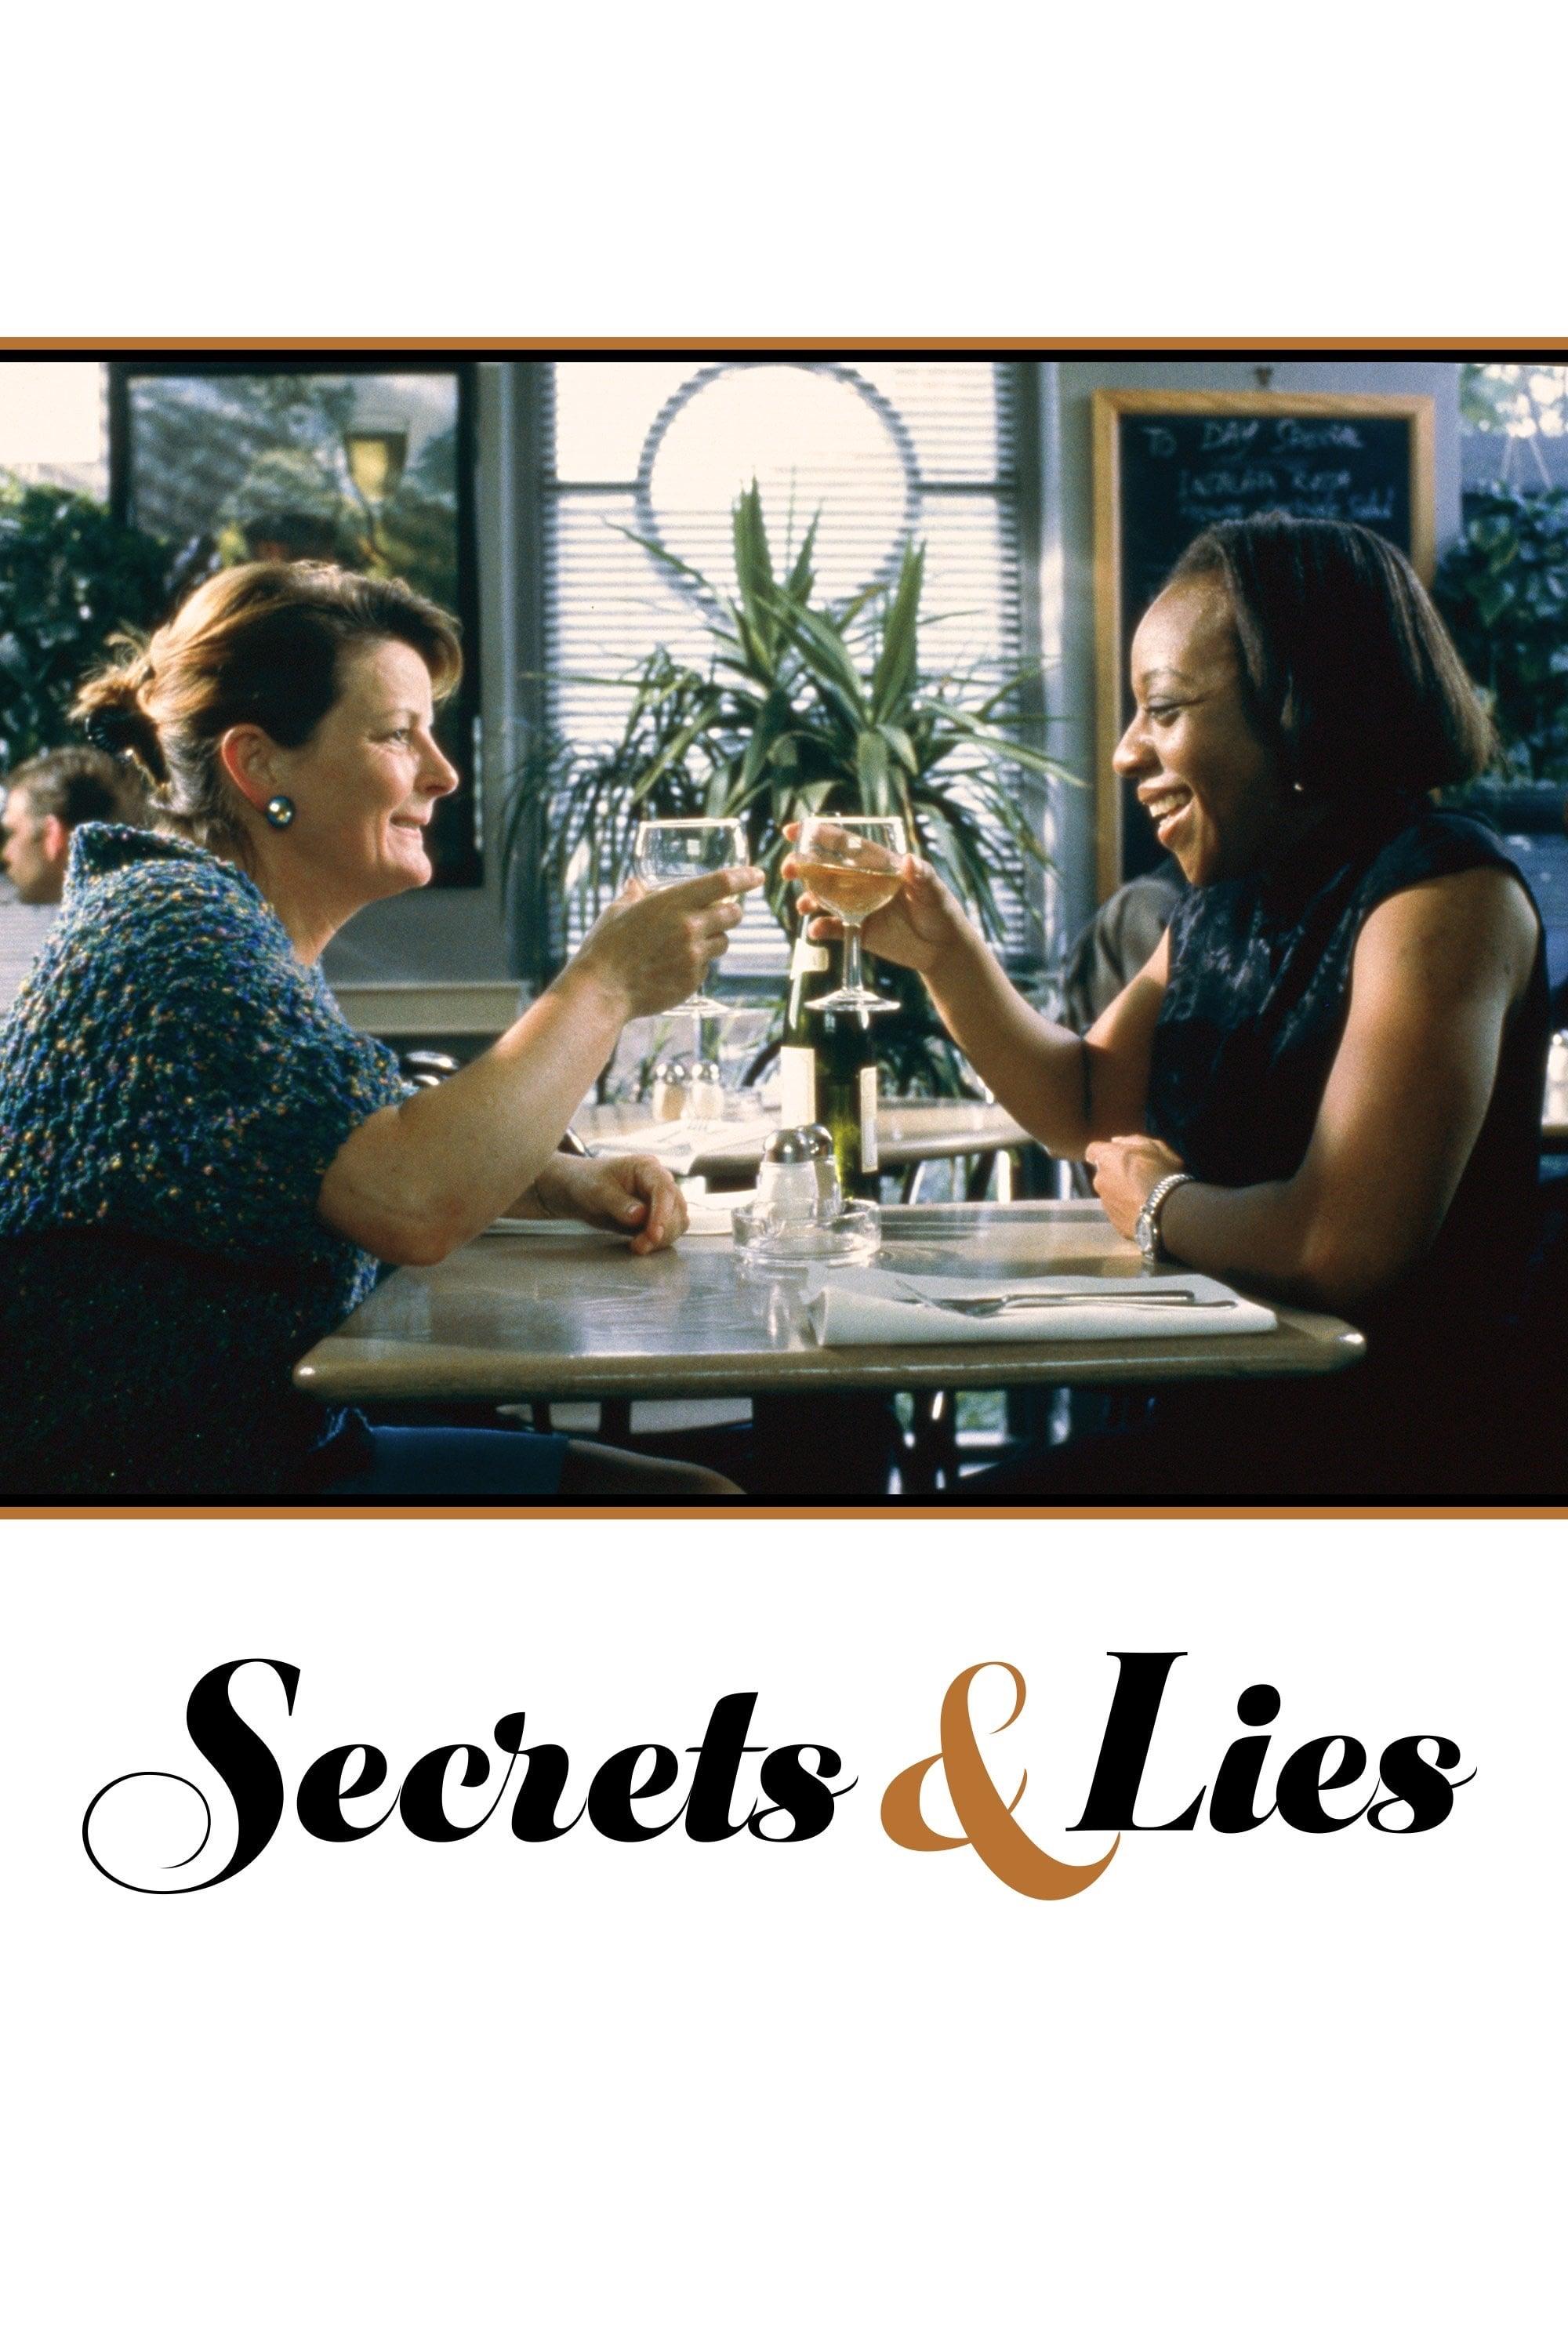 Secrets & Lies poster